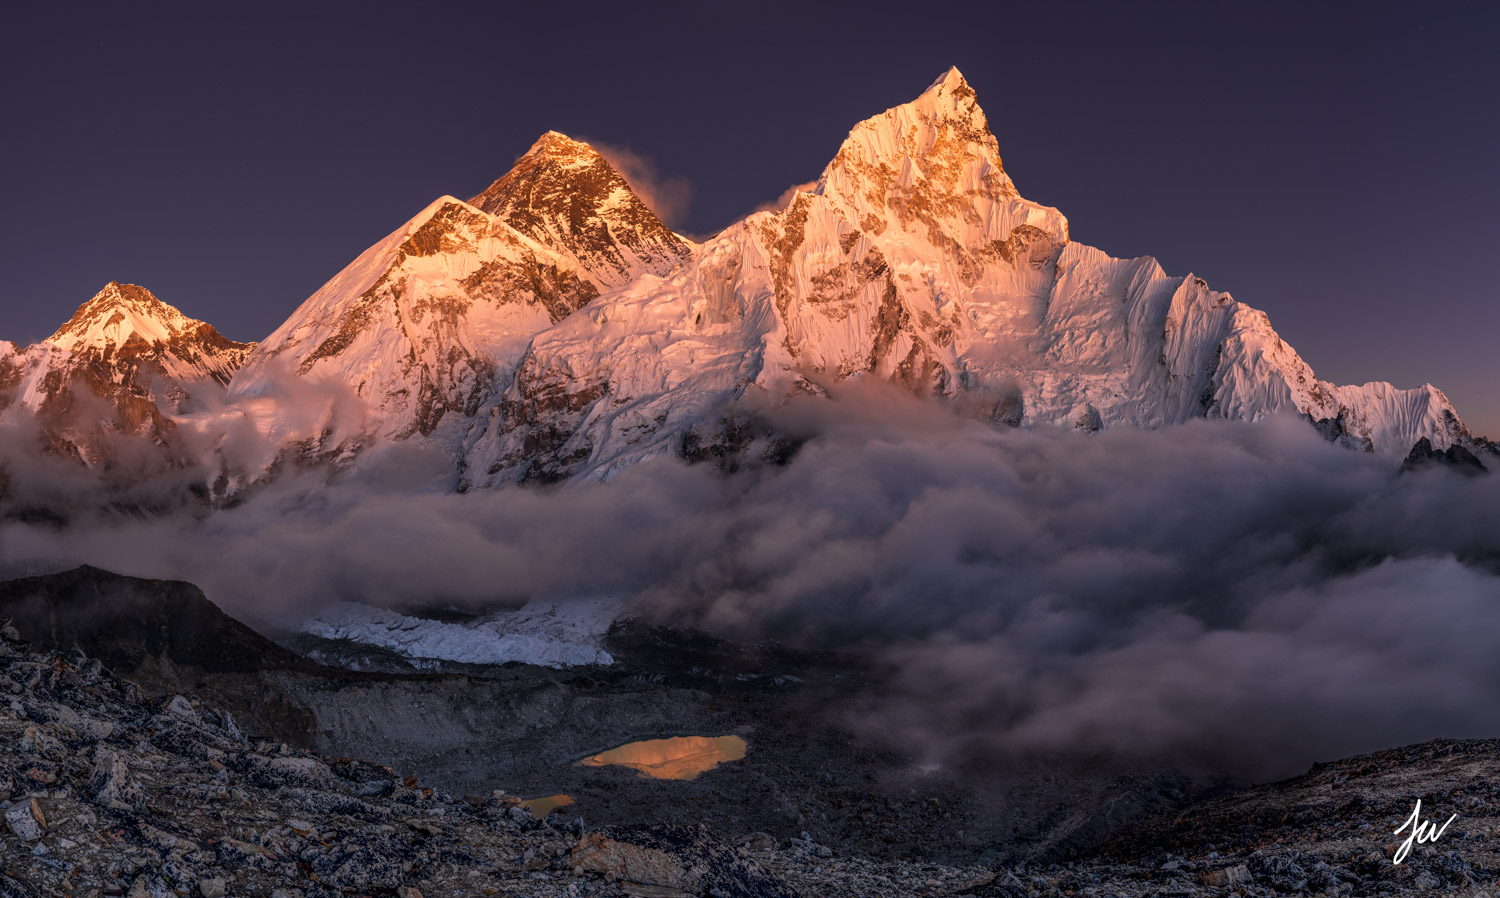 Kala Patthar sunset on Everest in the Khumbu. 